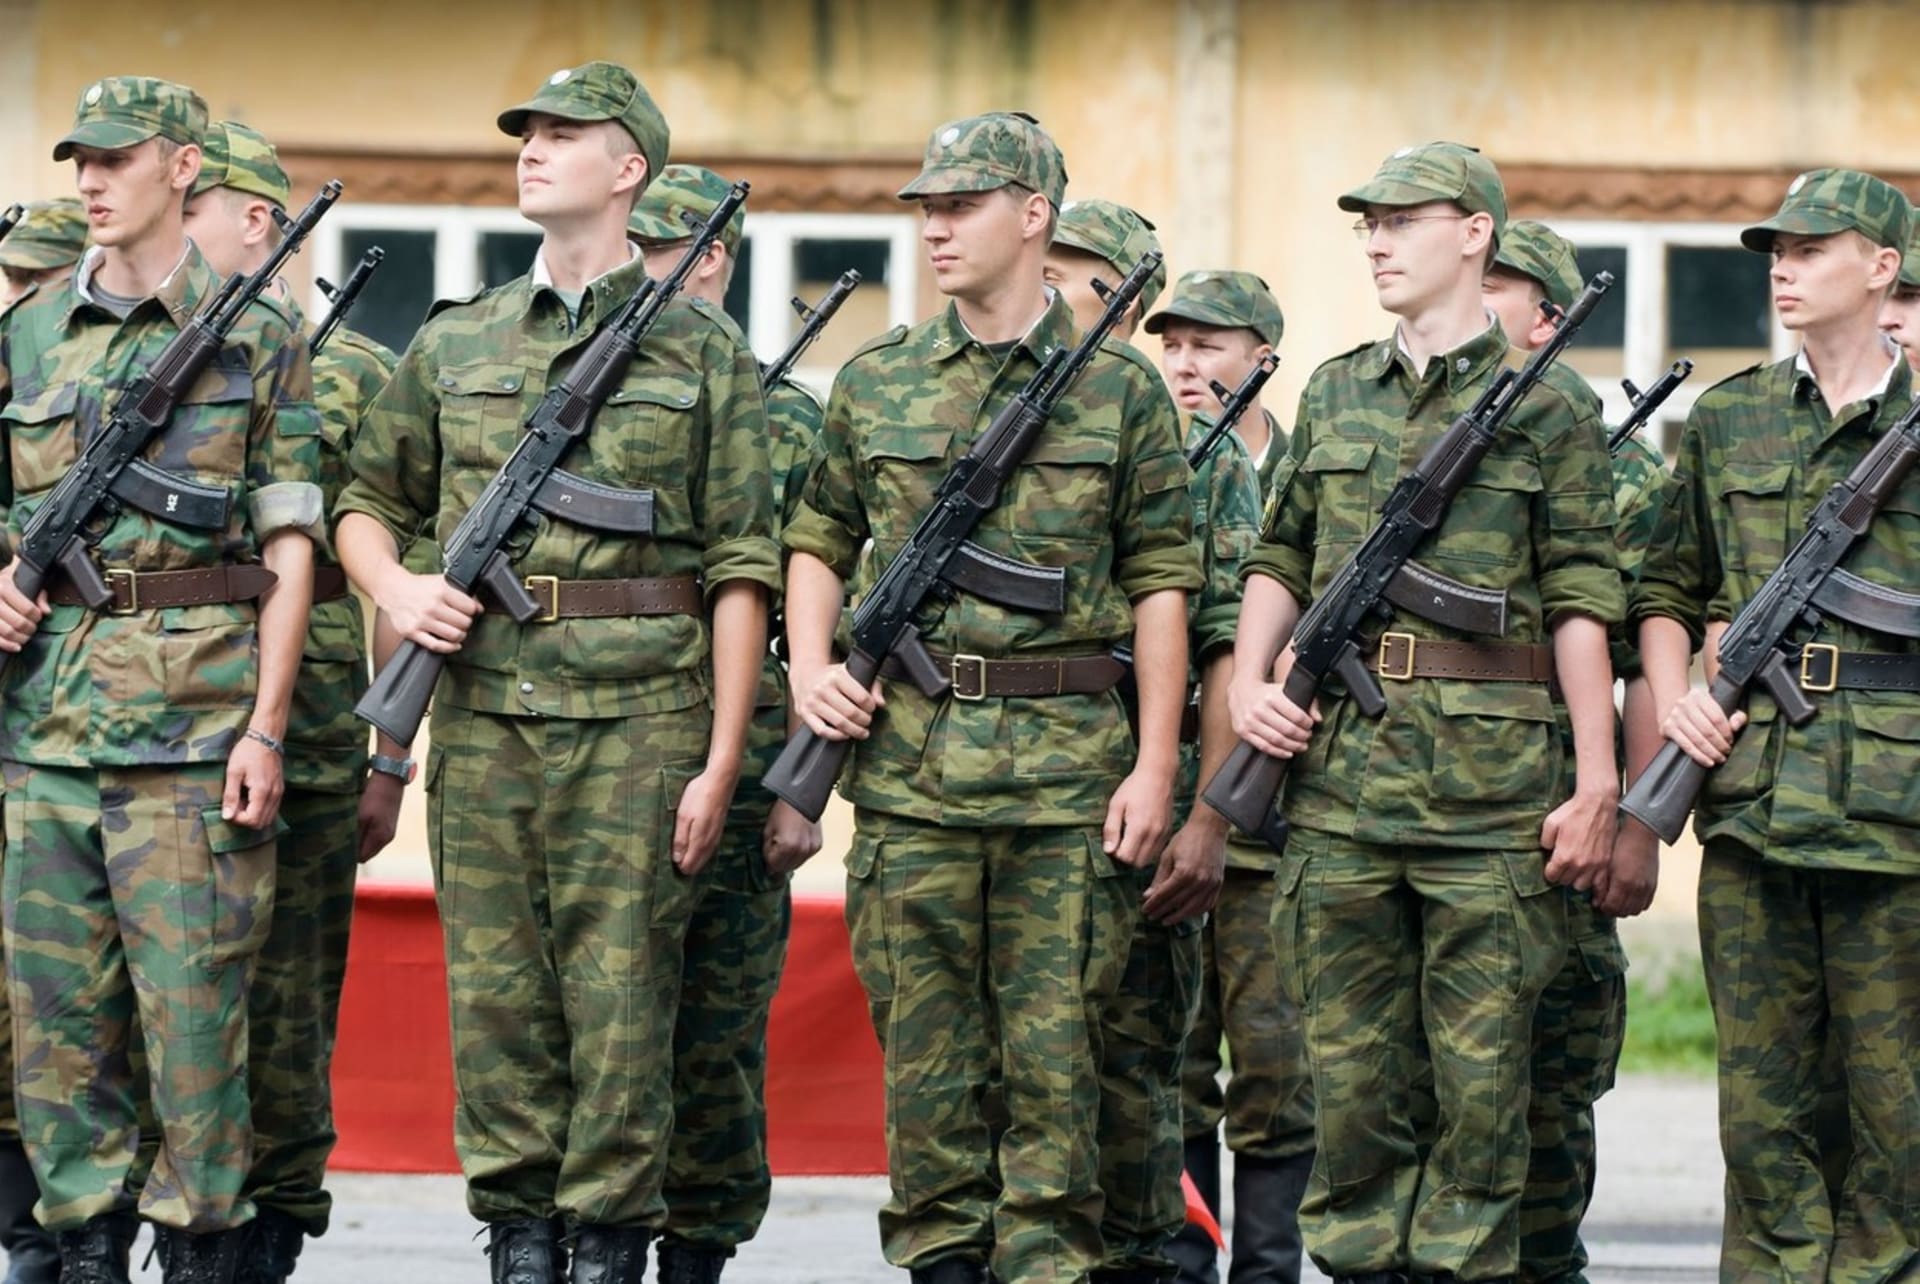 Mladí vojáci na přehlídce těsně před vojenskou přísahou.